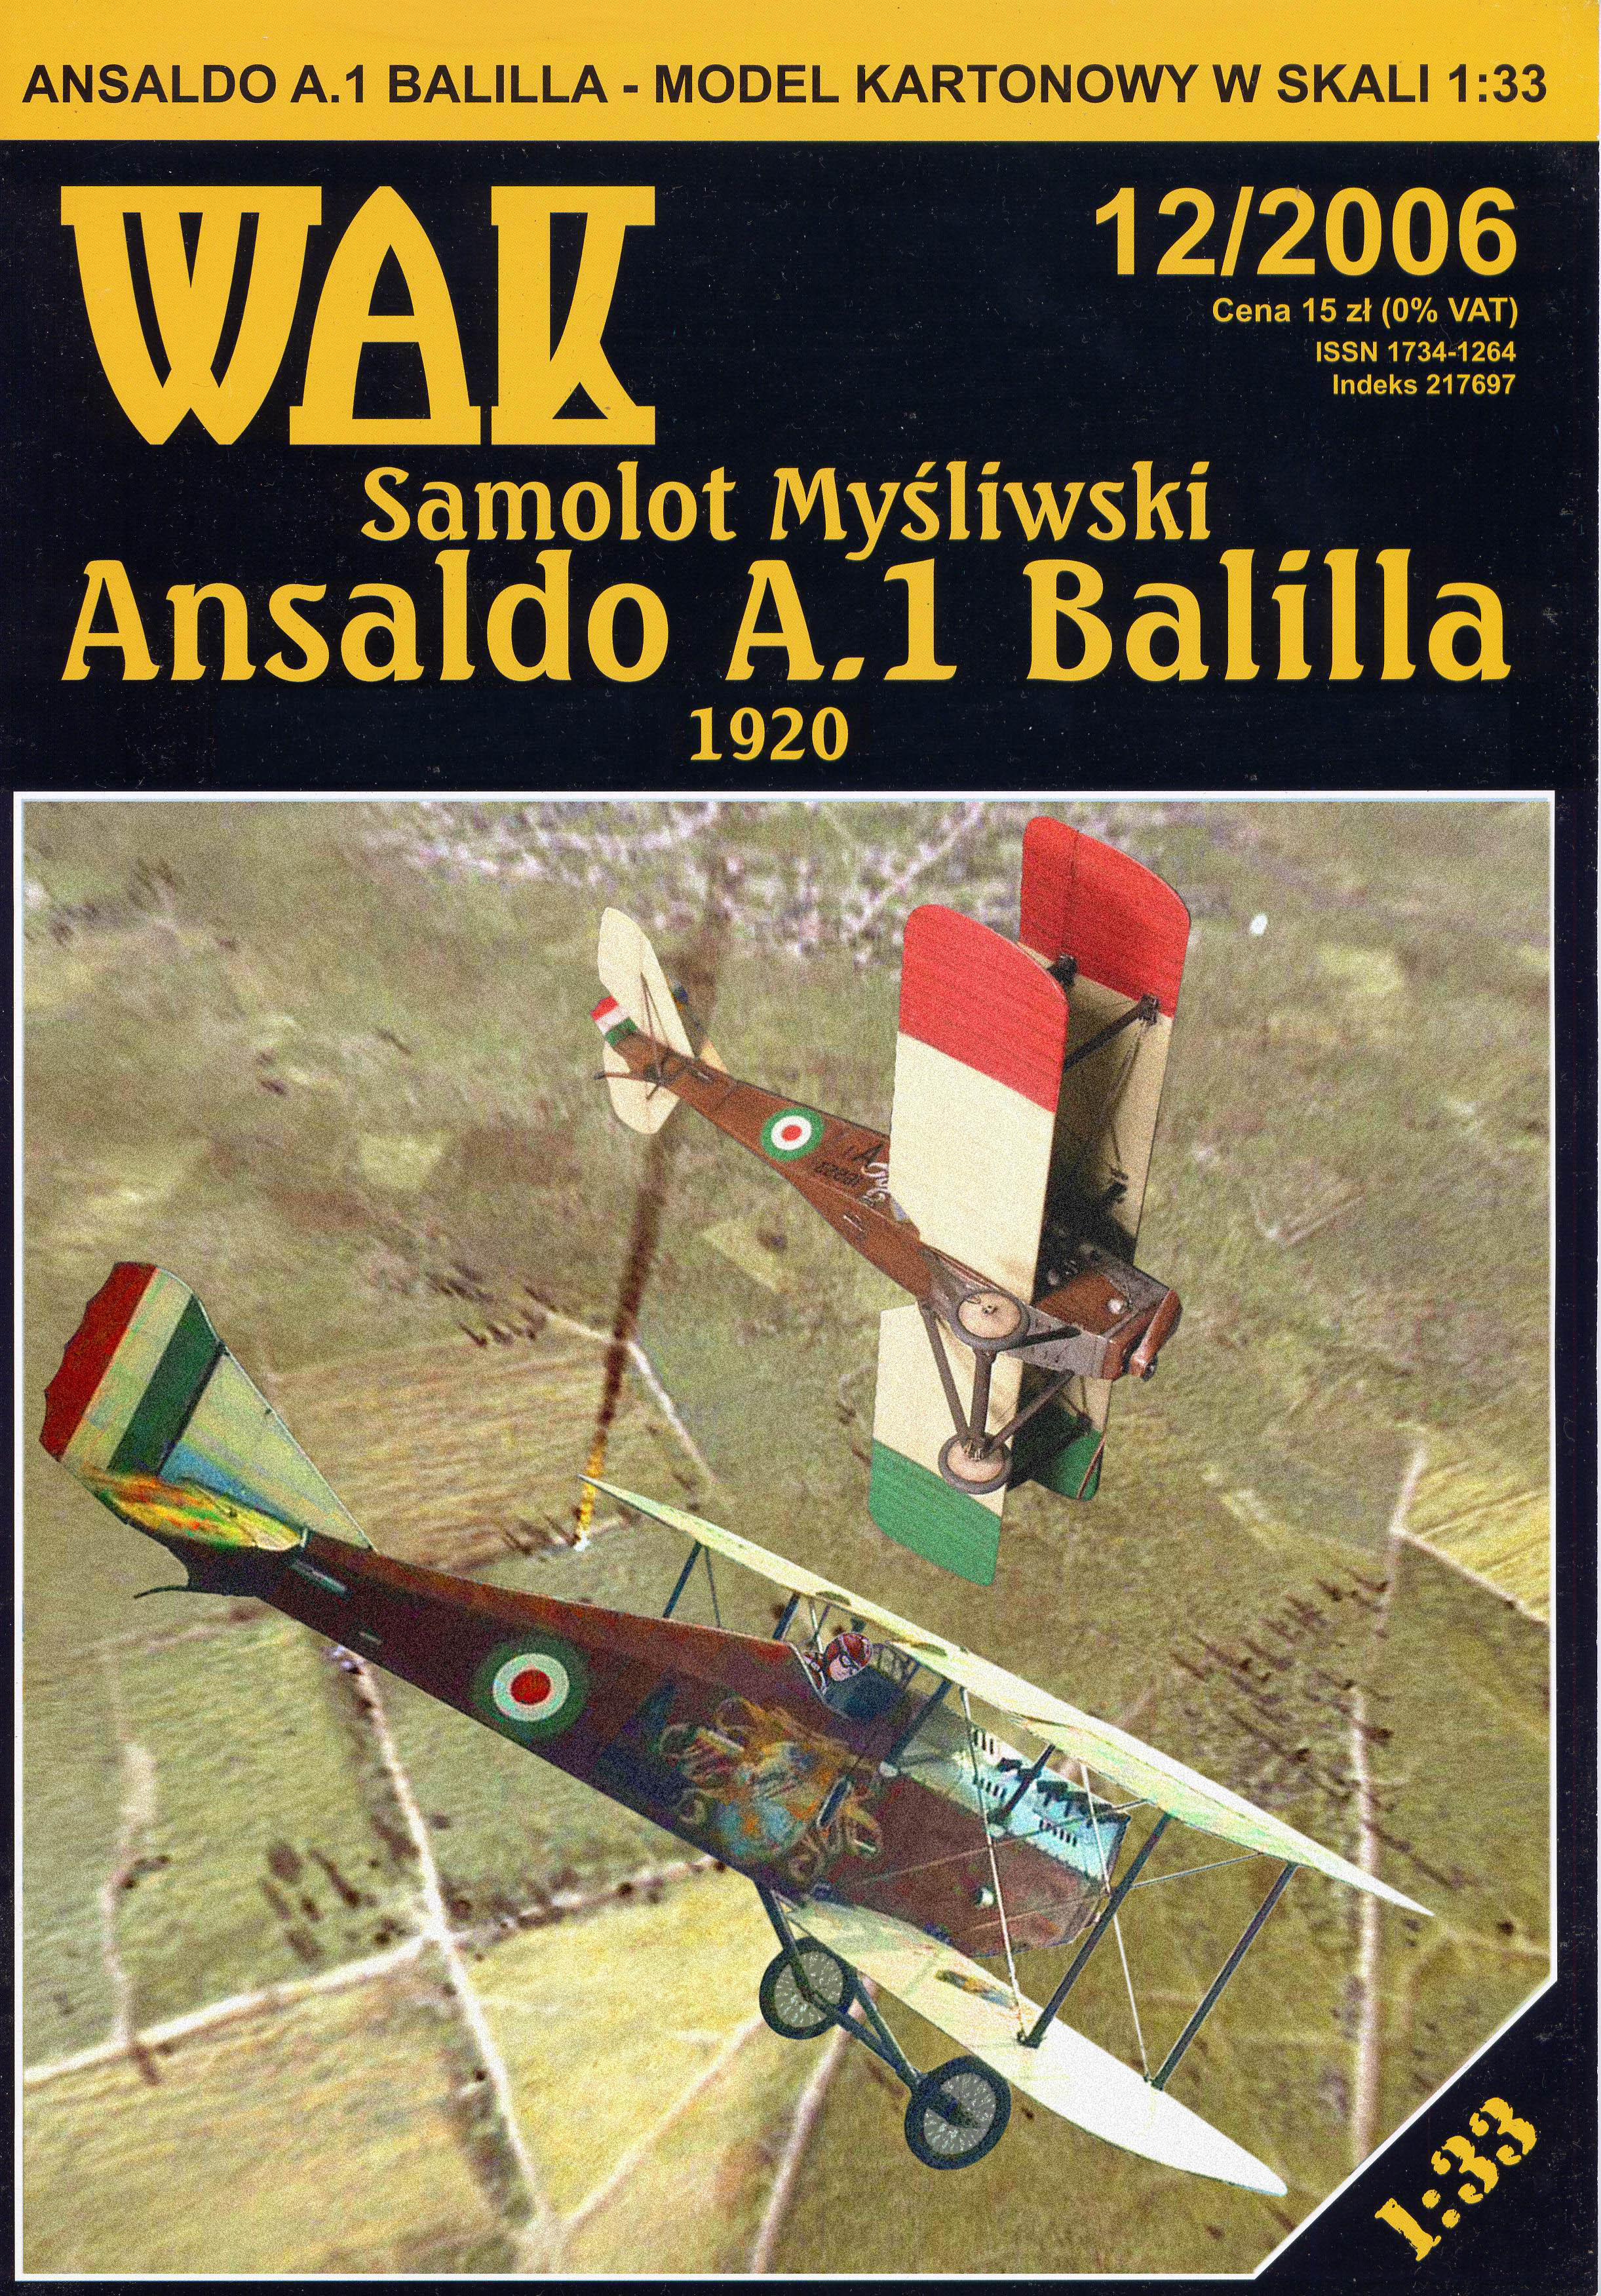 WAK - Ansaldo A.1 Balilla.jpg